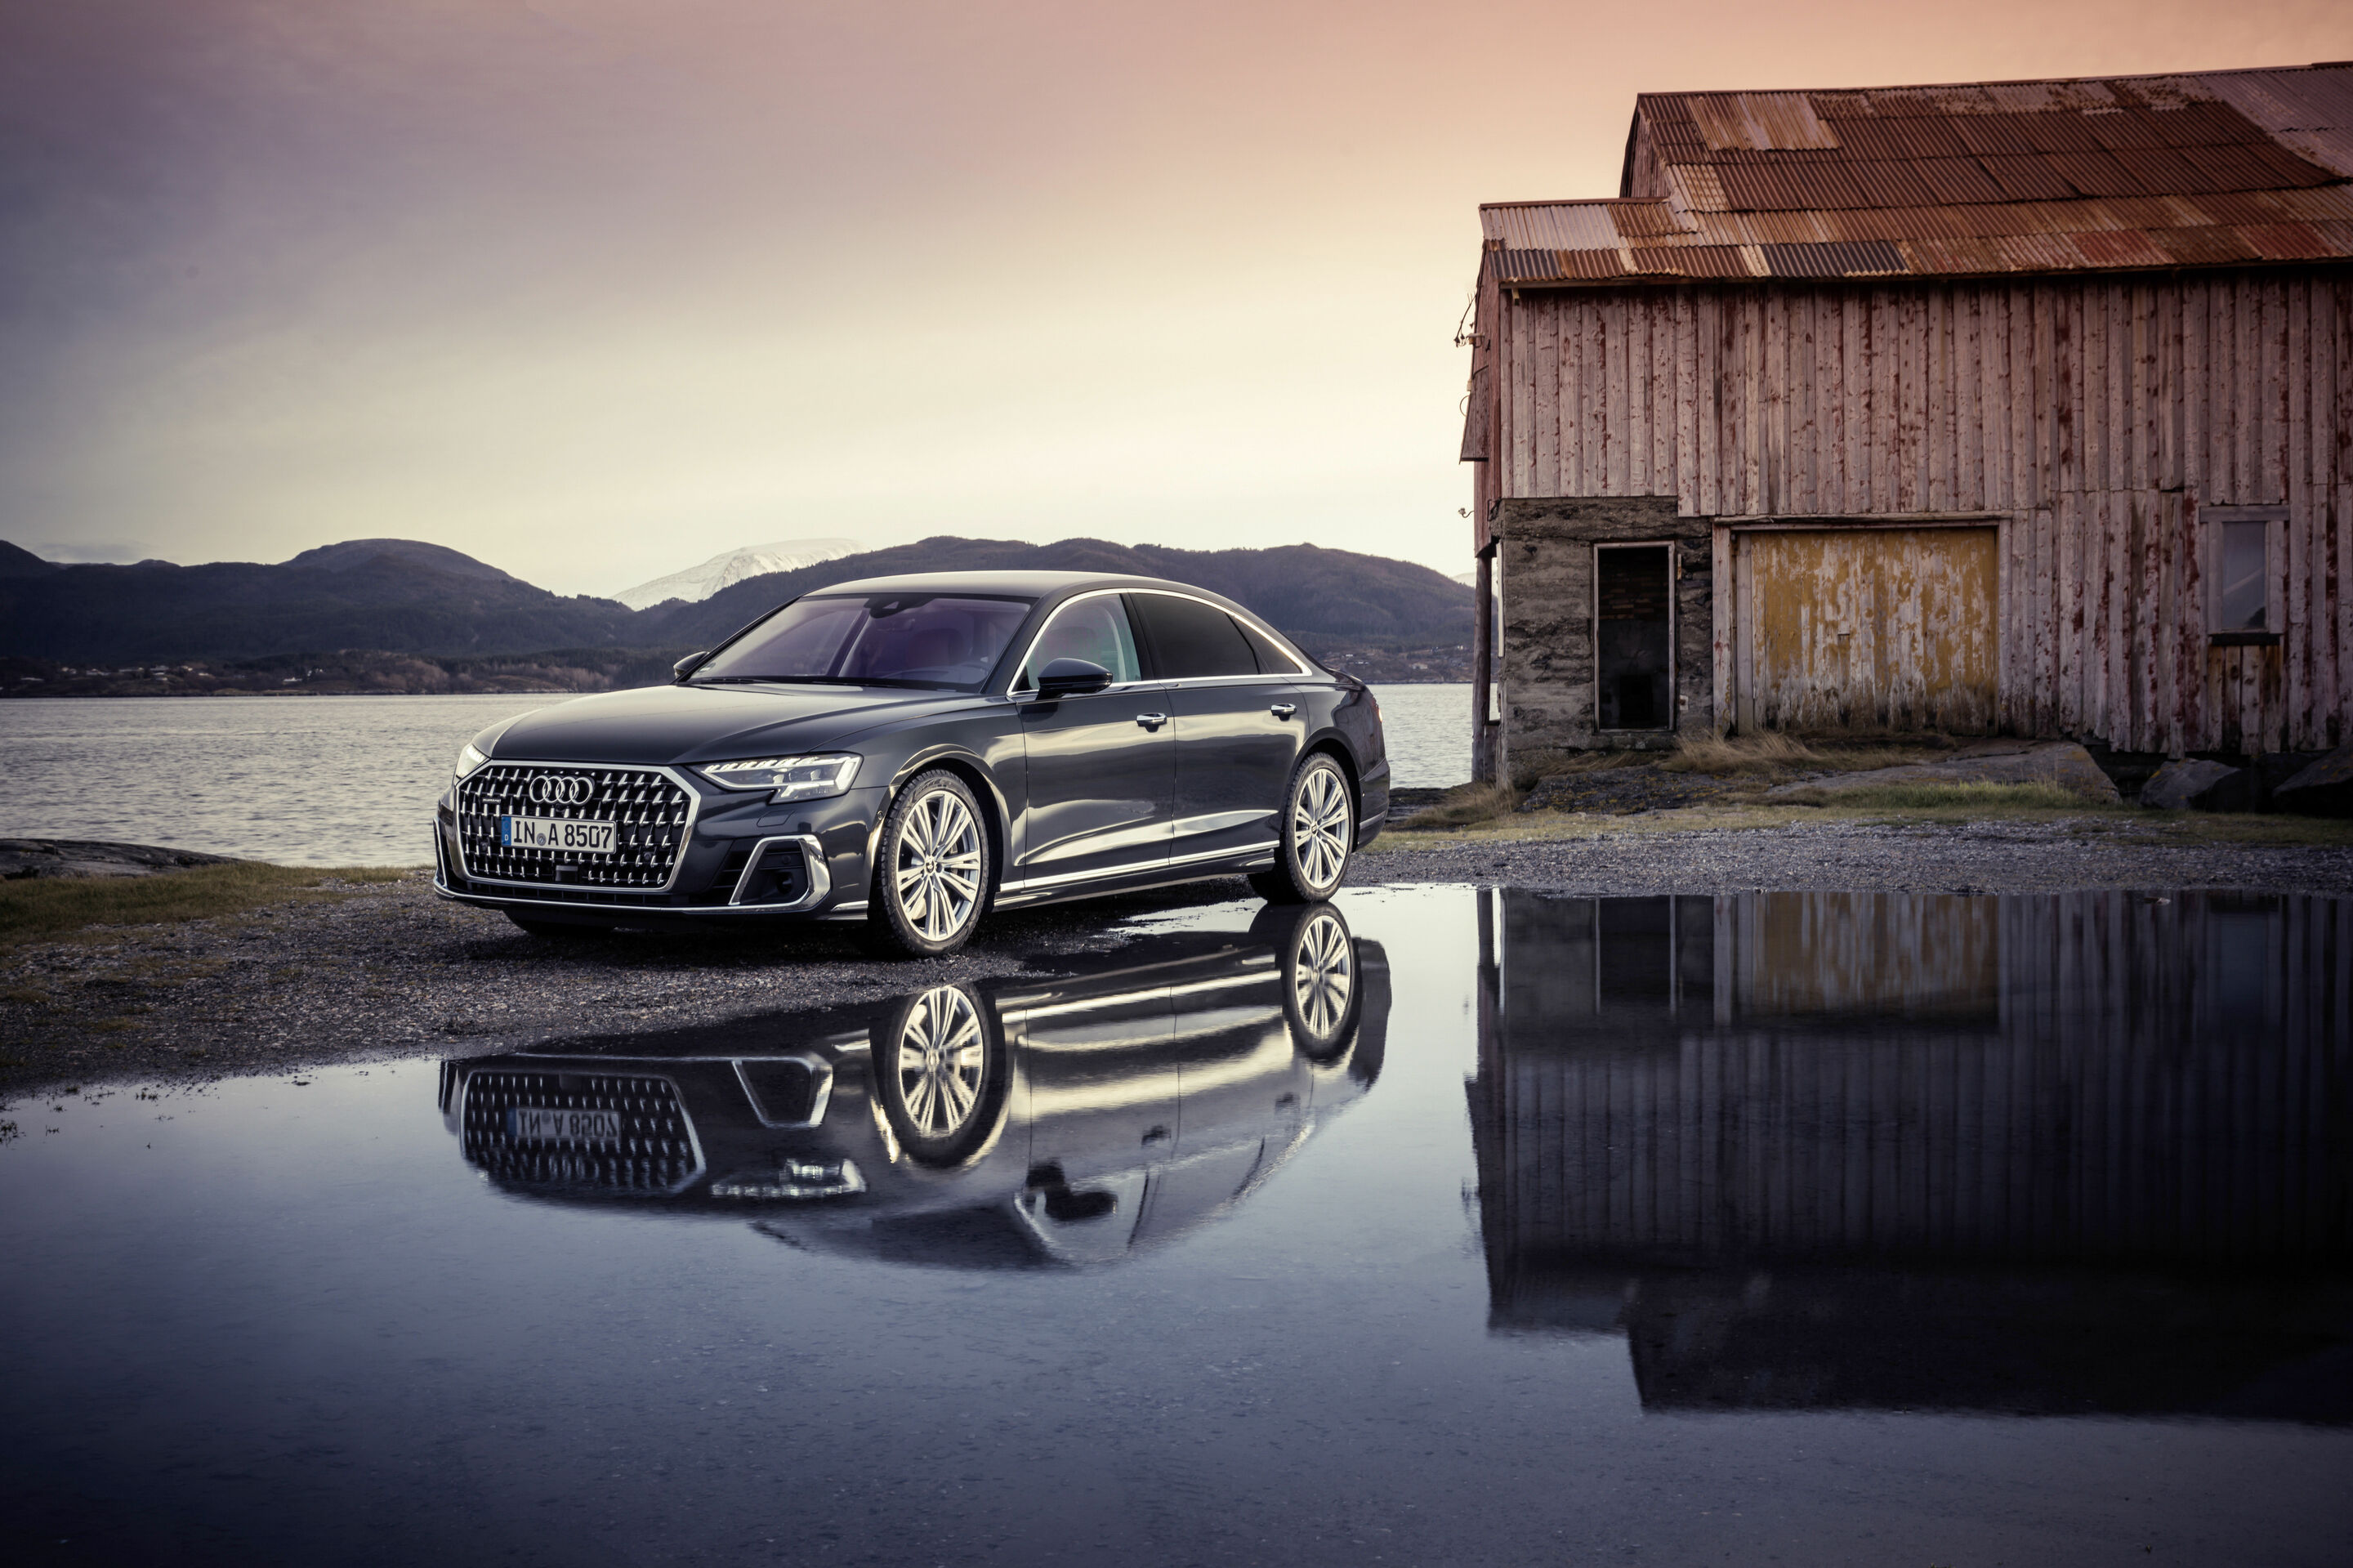 Buy Xcessories Audi A8 Car Cover Online - Shop Automotive on